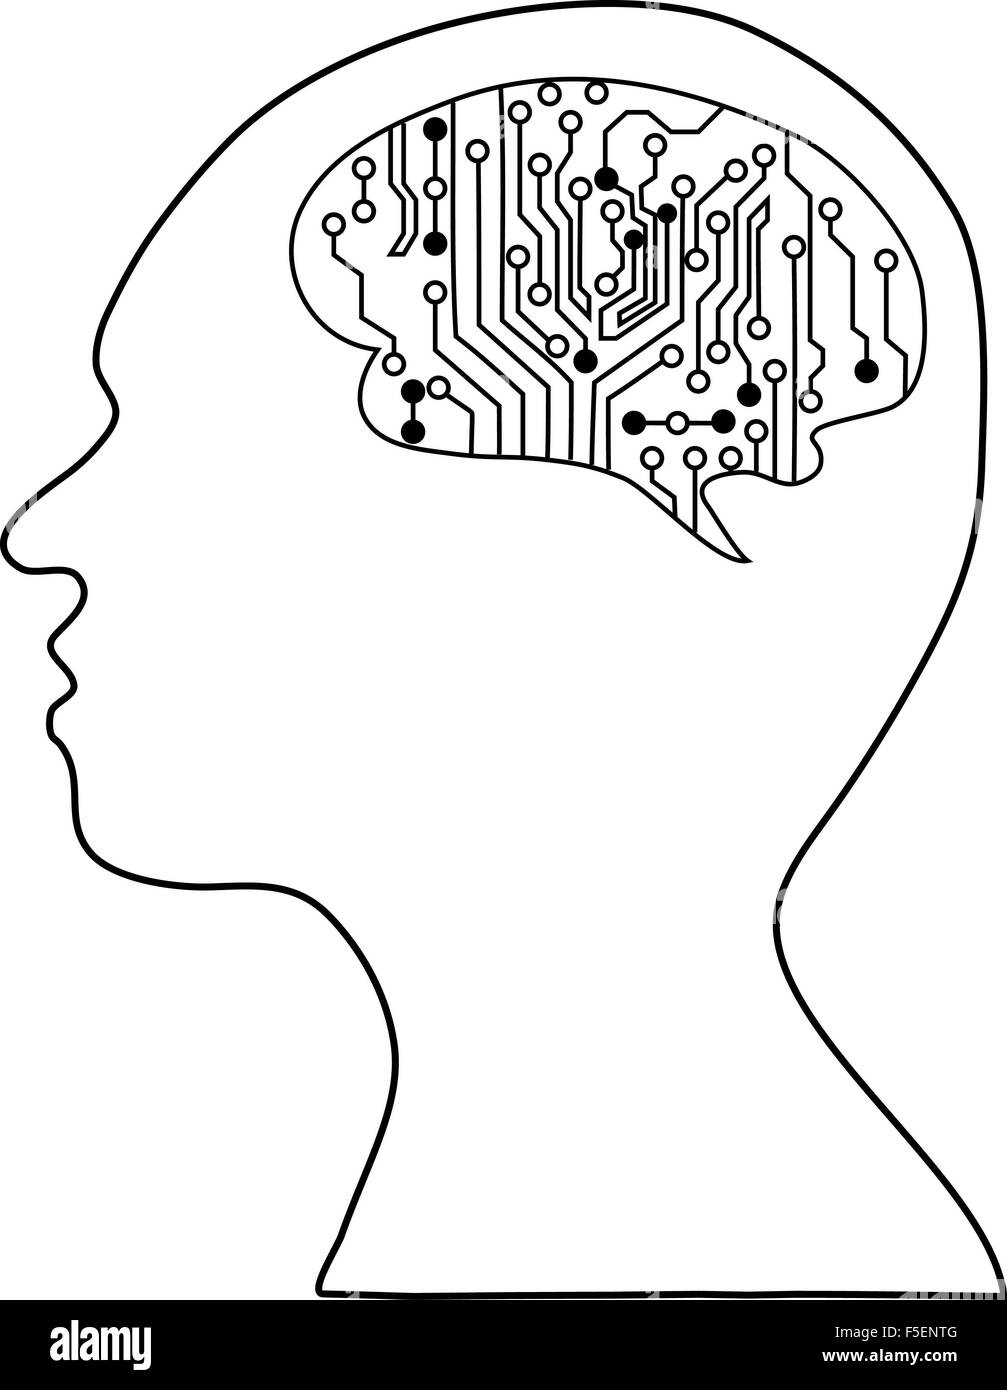 Technologische Gehirne. Vektor-eps10.silhouette des Kopfes und des Gehirns. Prozess des menschlichen Denkens. Das Konzept der Intelligenz. P Stockfoto